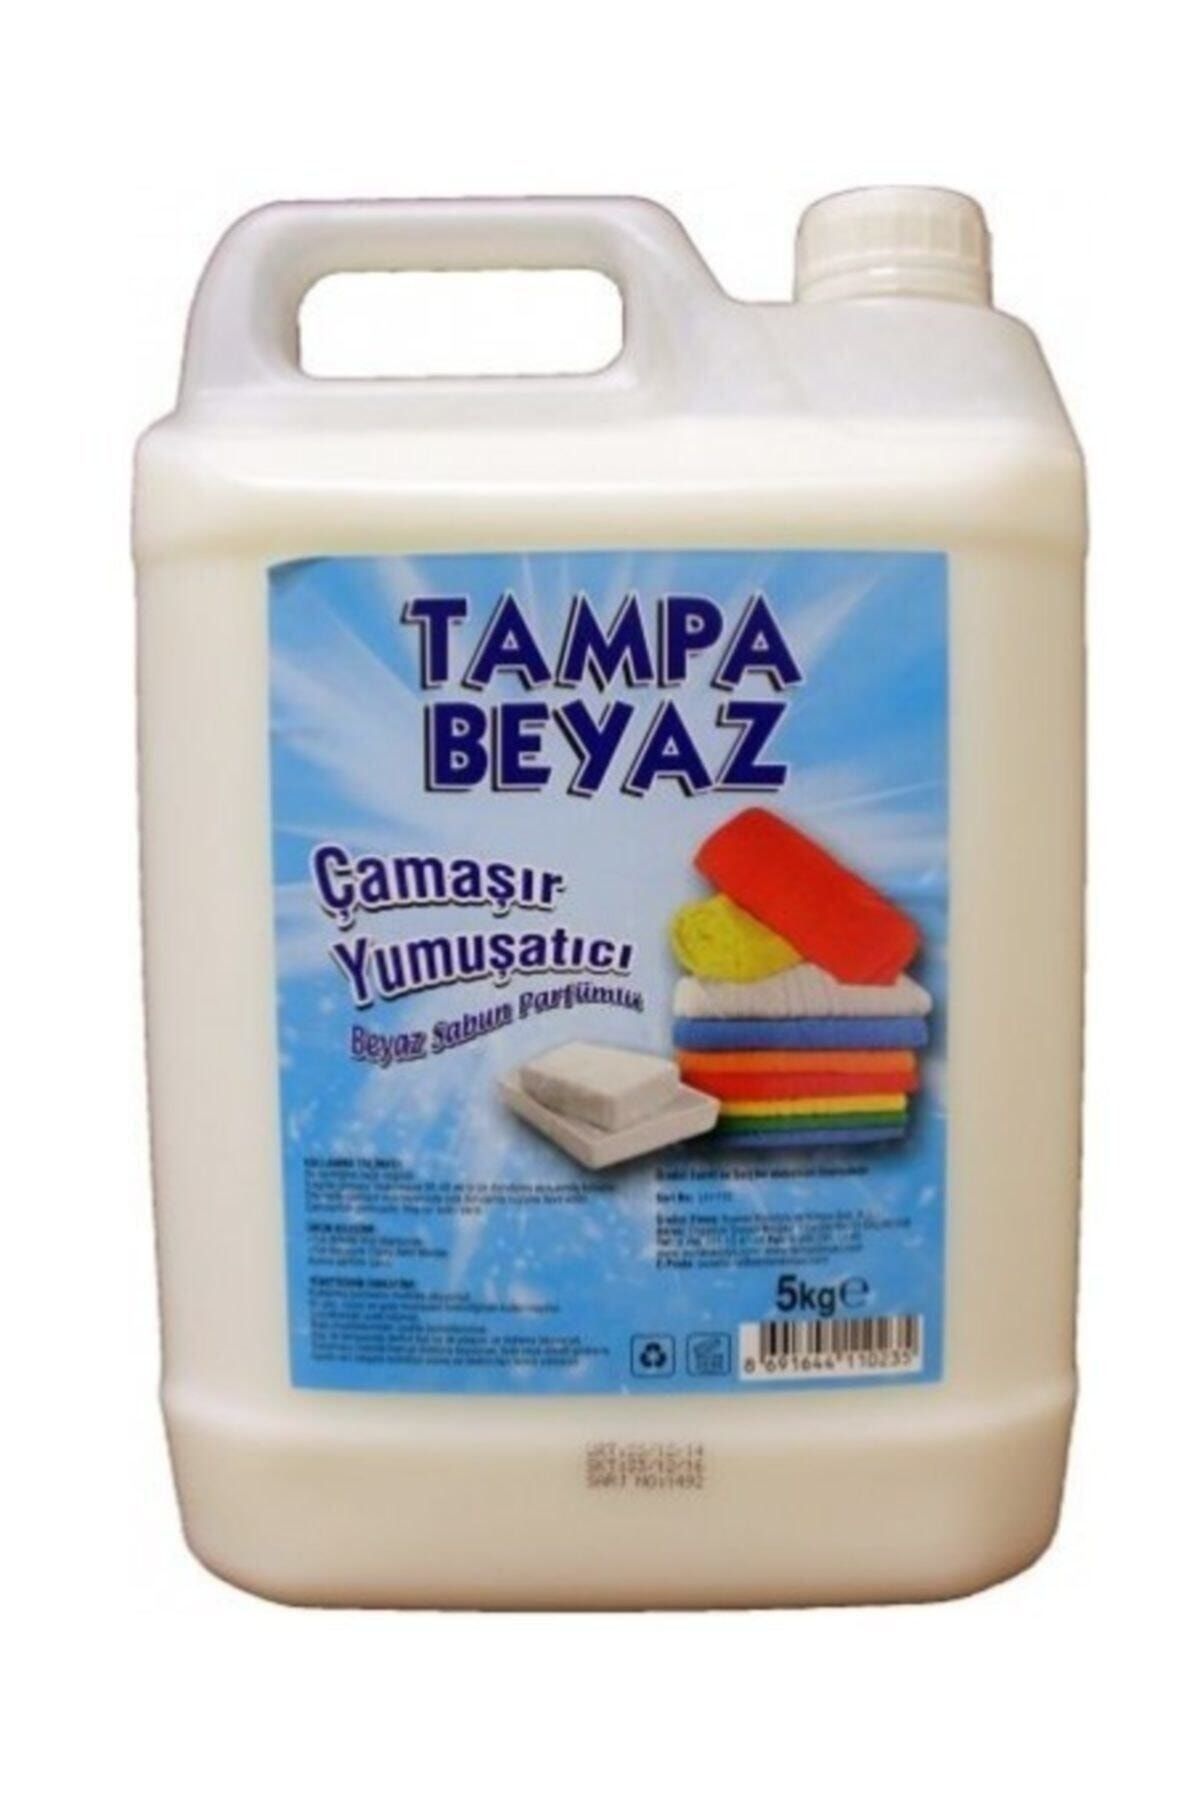 TAMPA Çamaşır Yumuşatıcı Beyaz Sabun Parfümlü 5 Lt